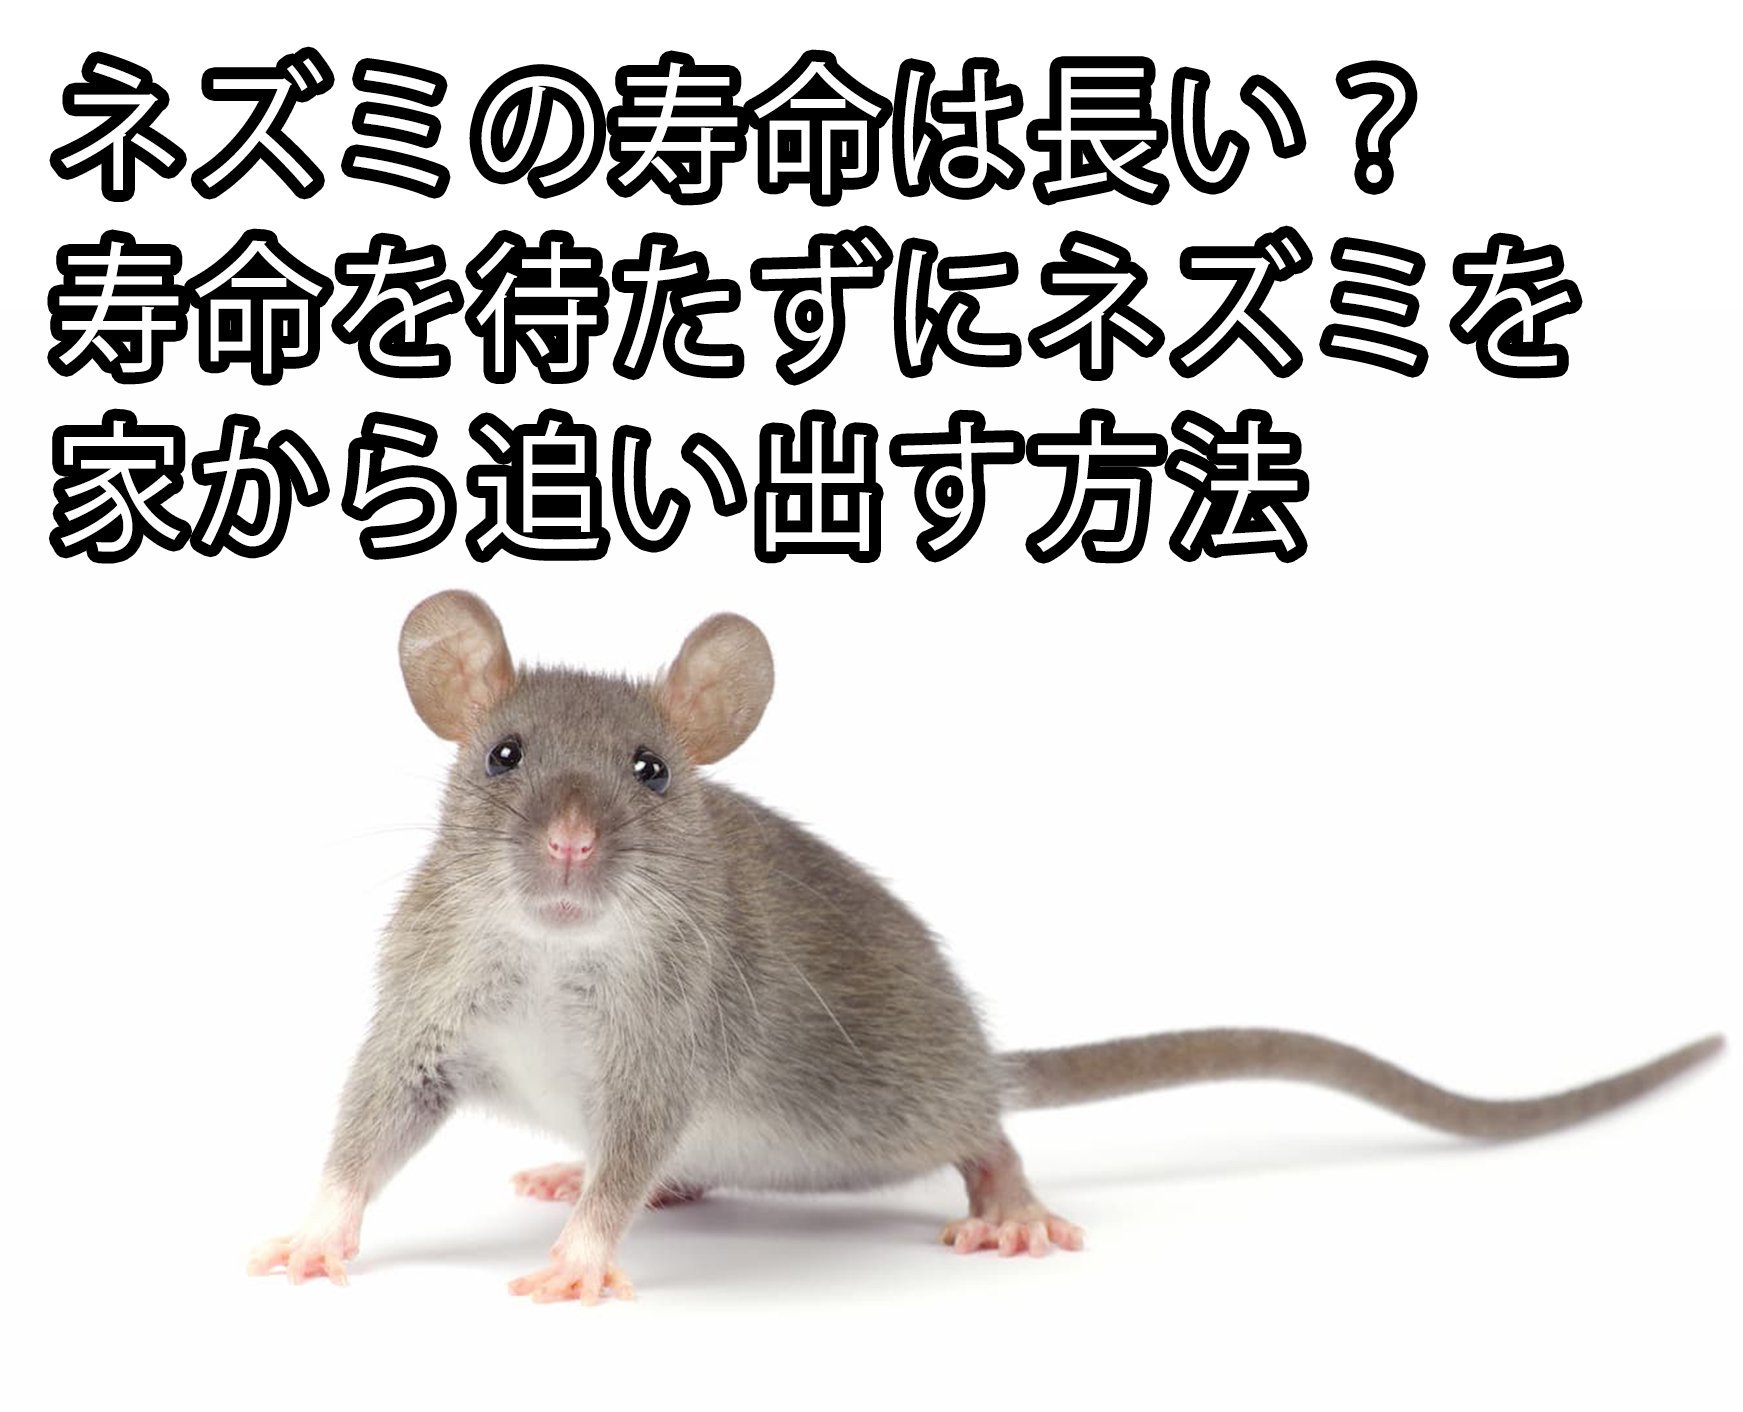 ネズミの寿命は長い 寿命を待たずにネズミを家から追い出す方法